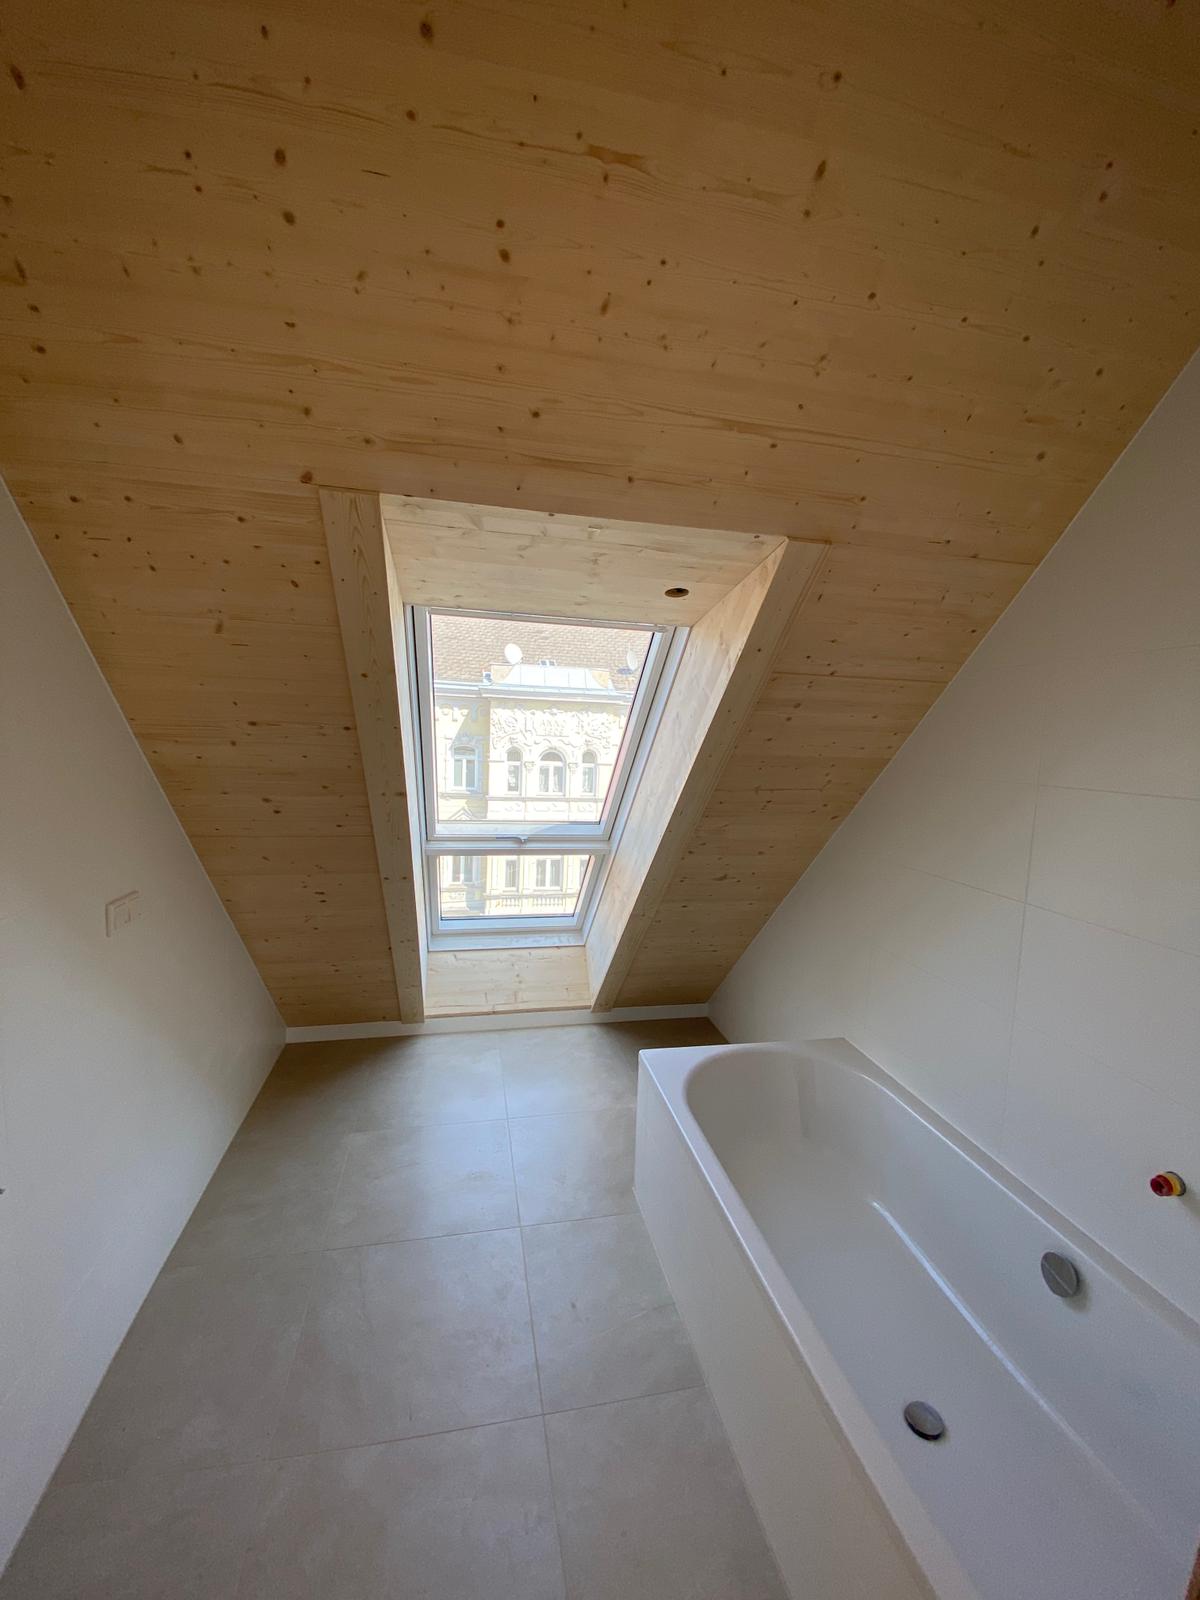 Badezimmer in Dachschraege mit Sichtholzdecke